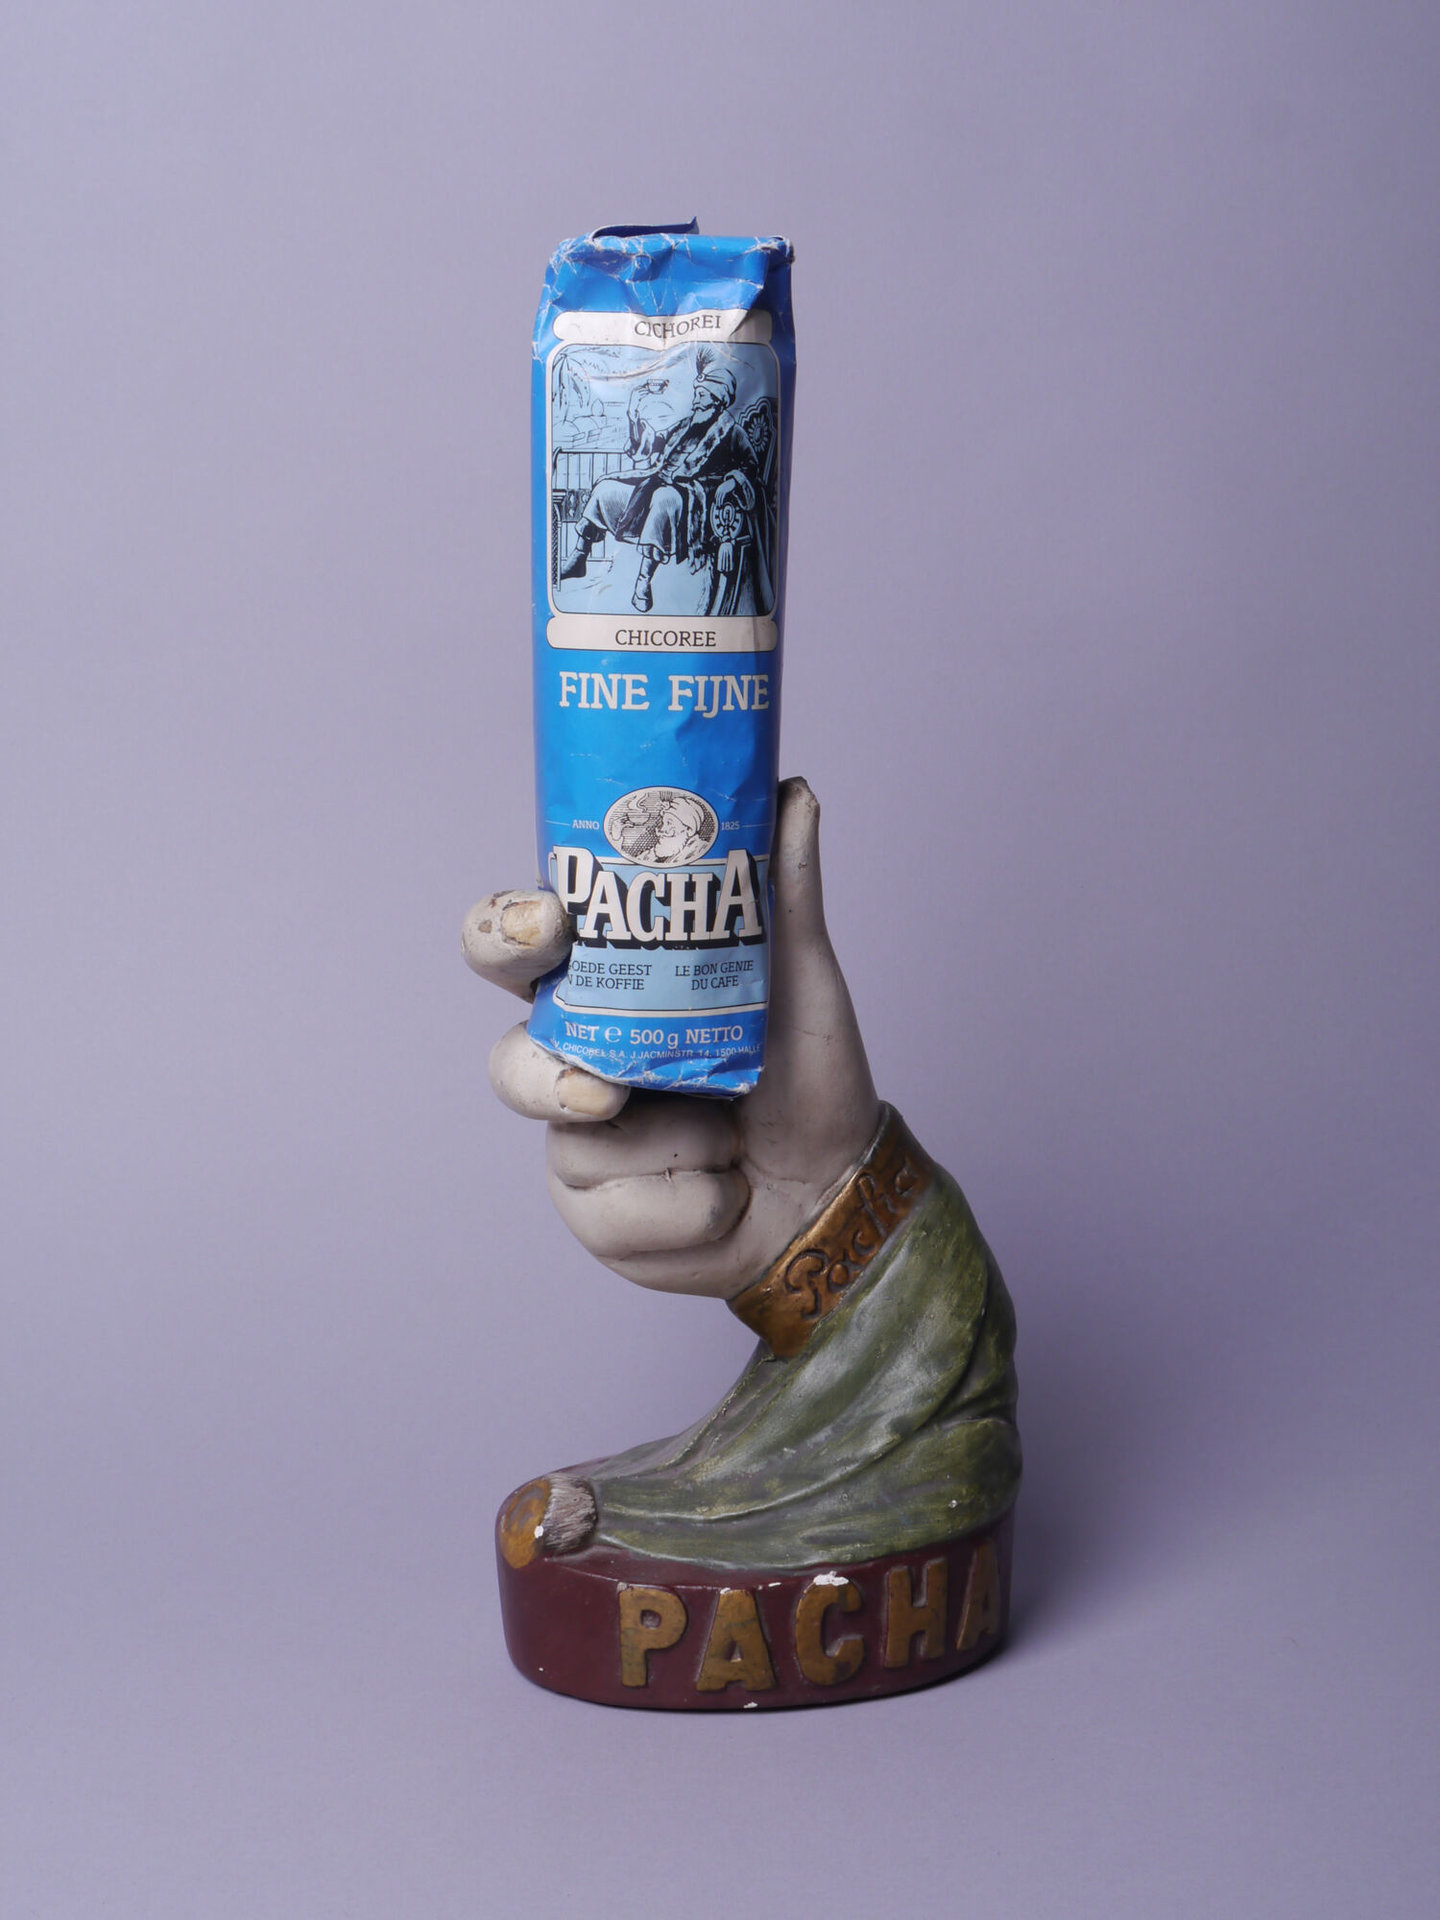 Etalagestuk met reclame voor cichorei van het merk Pacha